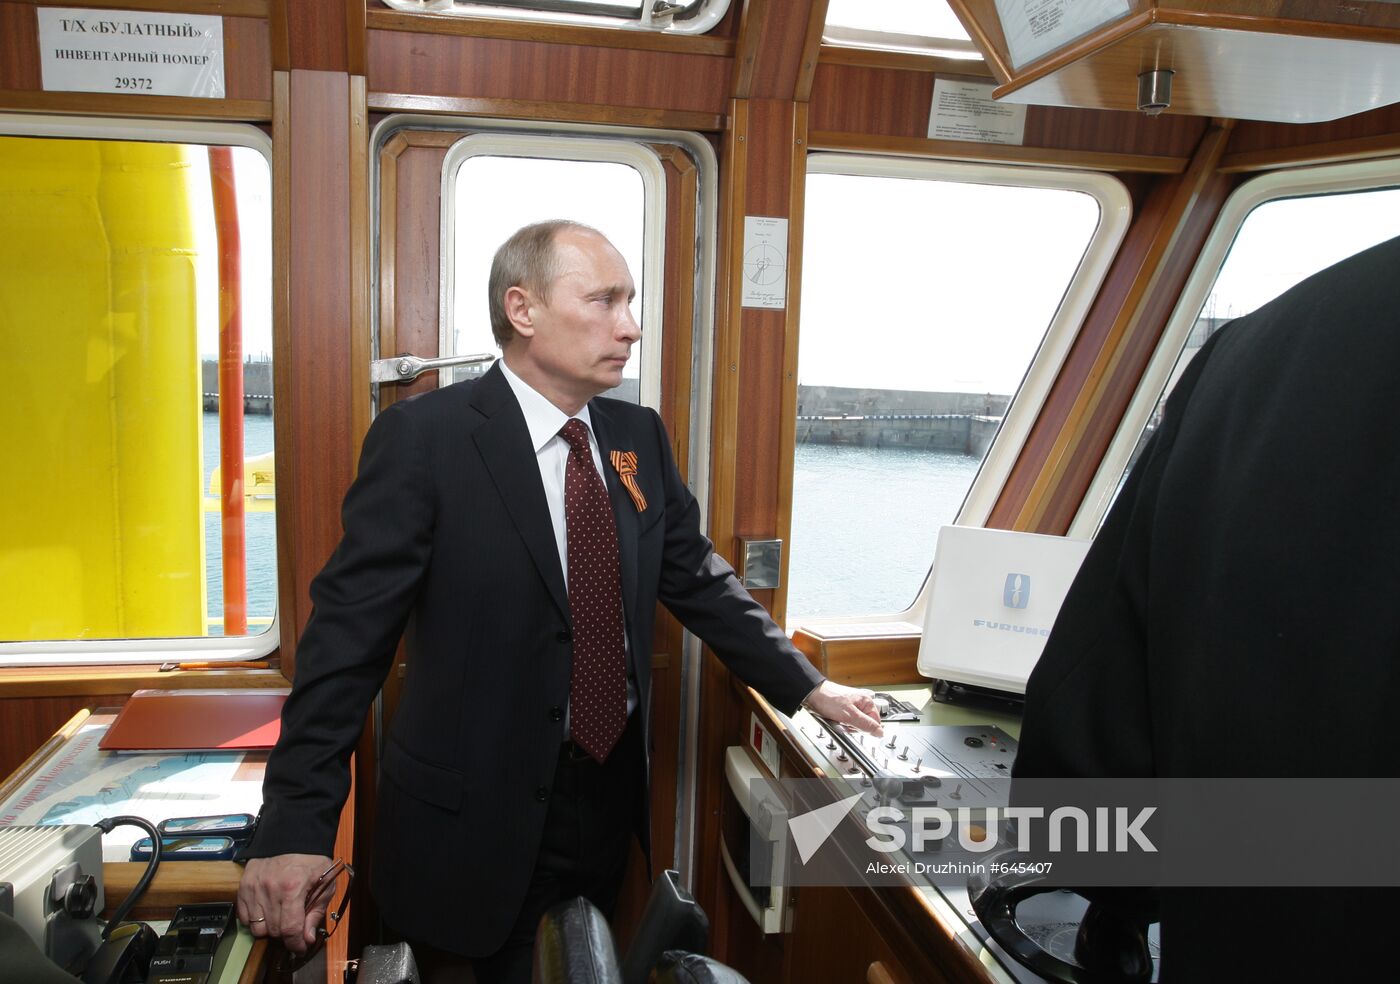 Vladimir Putin visits Novorossiysk